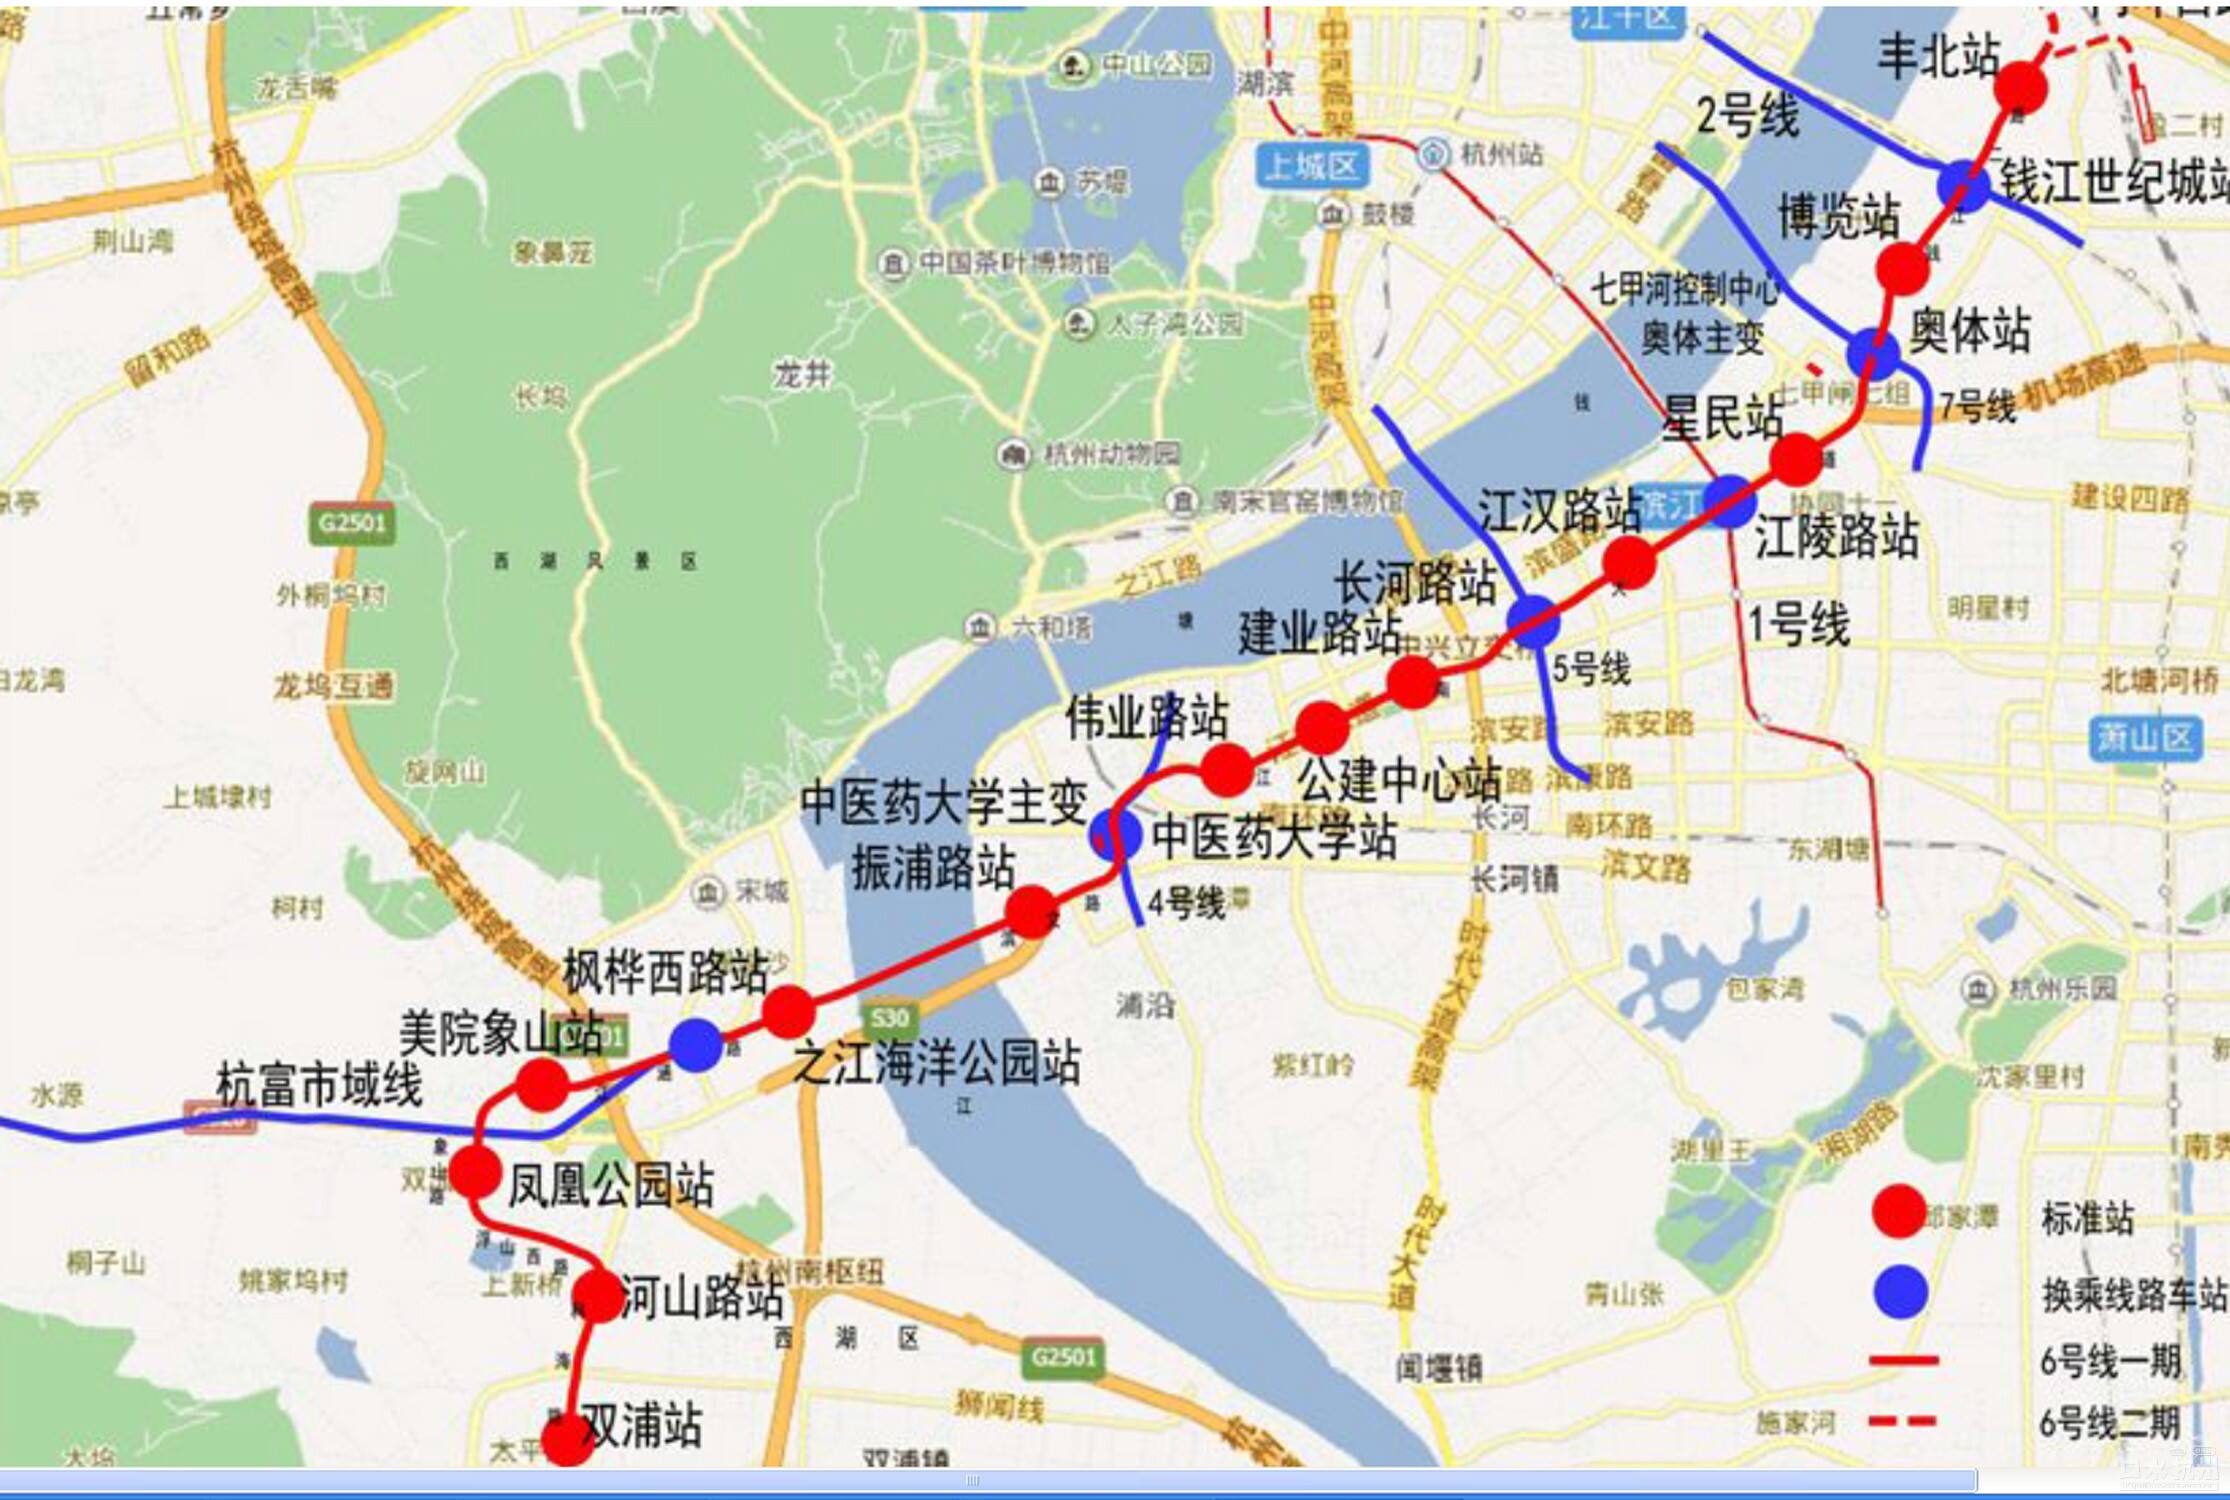 杭州地铁6号线一期预计明年开工 2019年建成